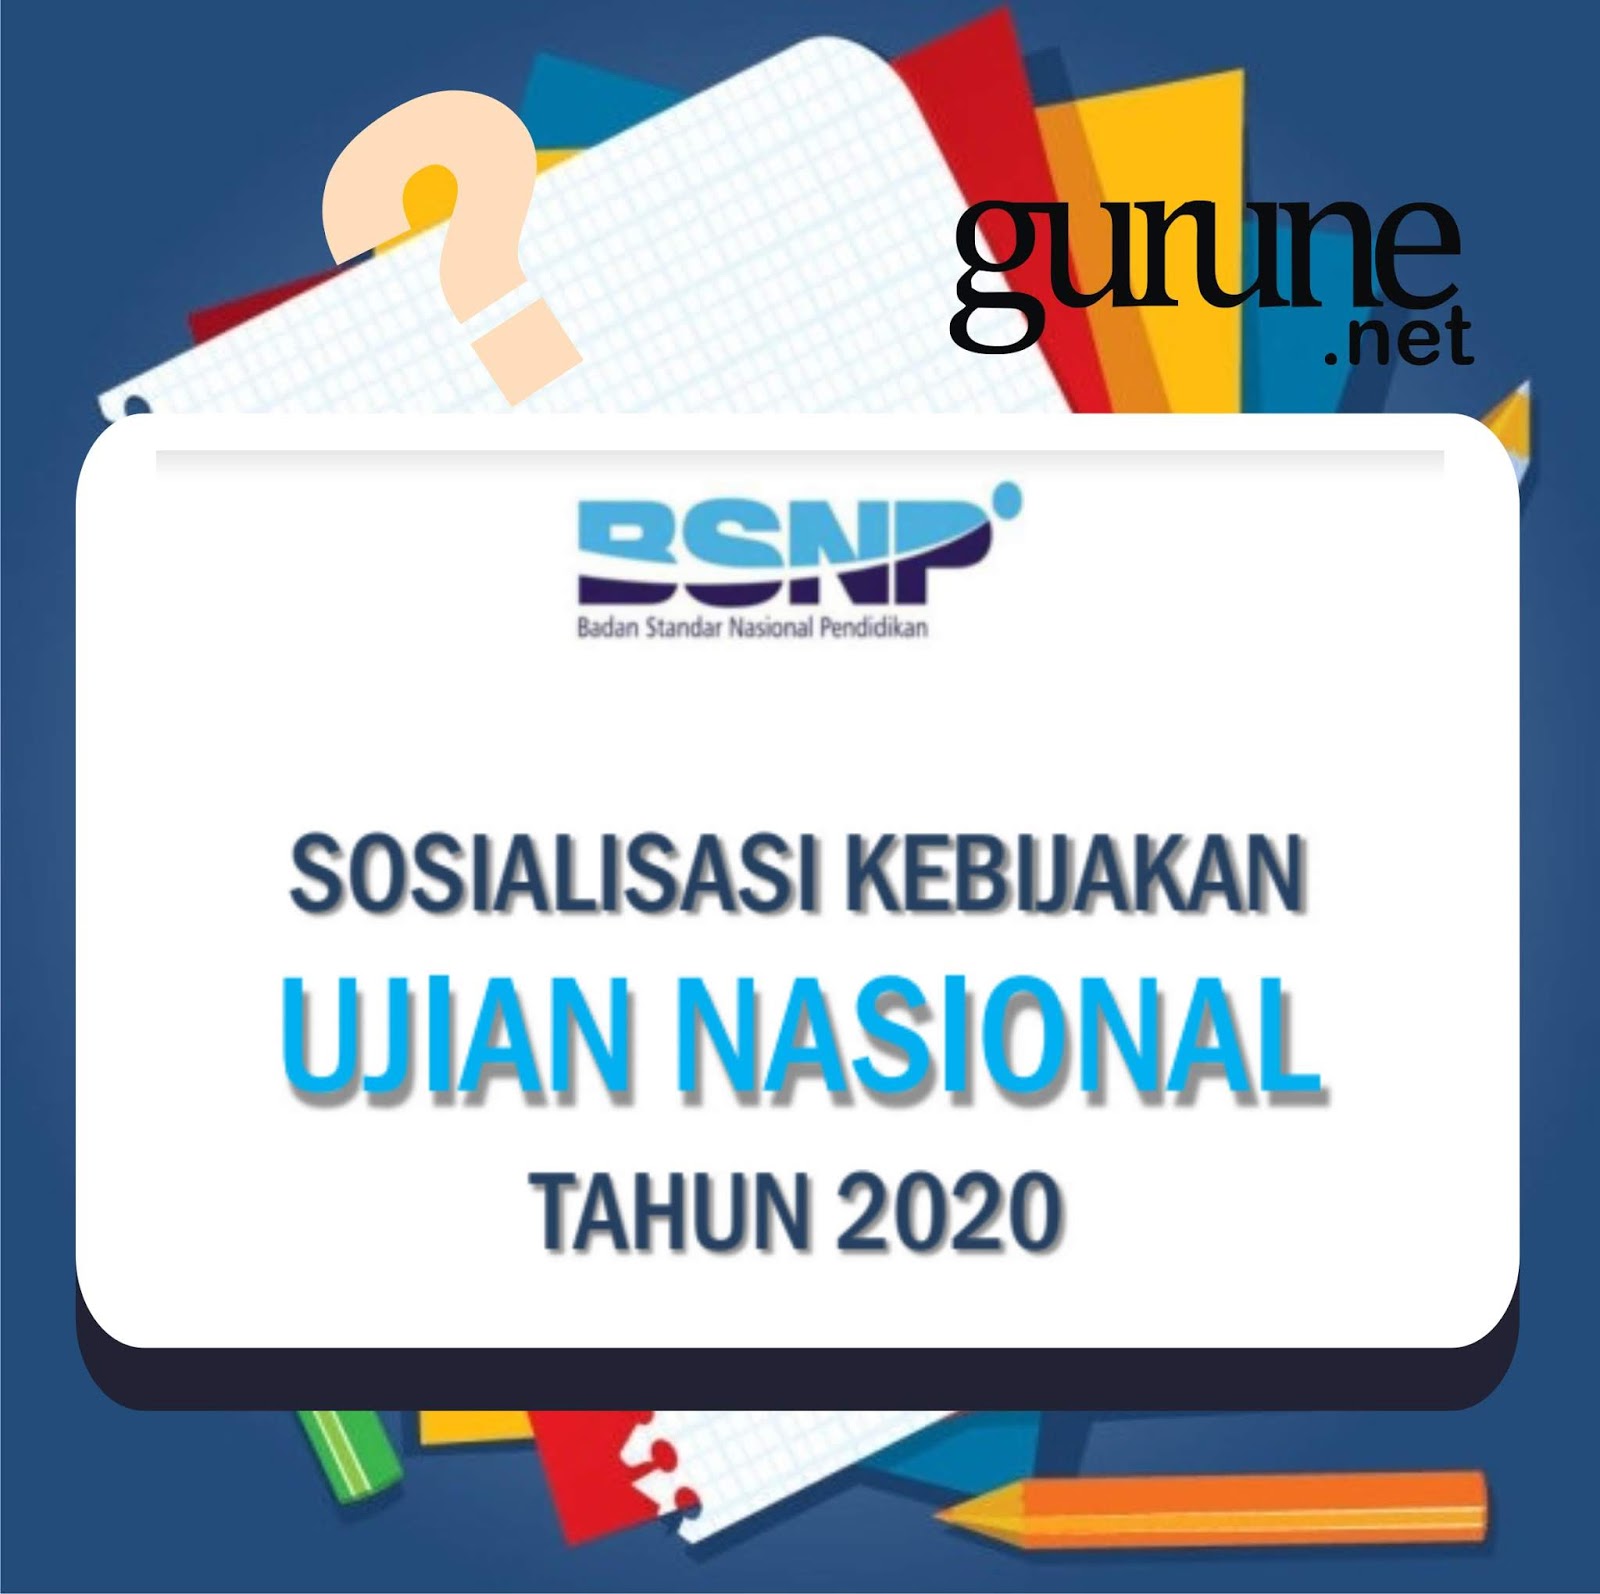 Download Slide File Sosialisasi Kebijakan Ujian Nasional atau UN Tahun 2020 